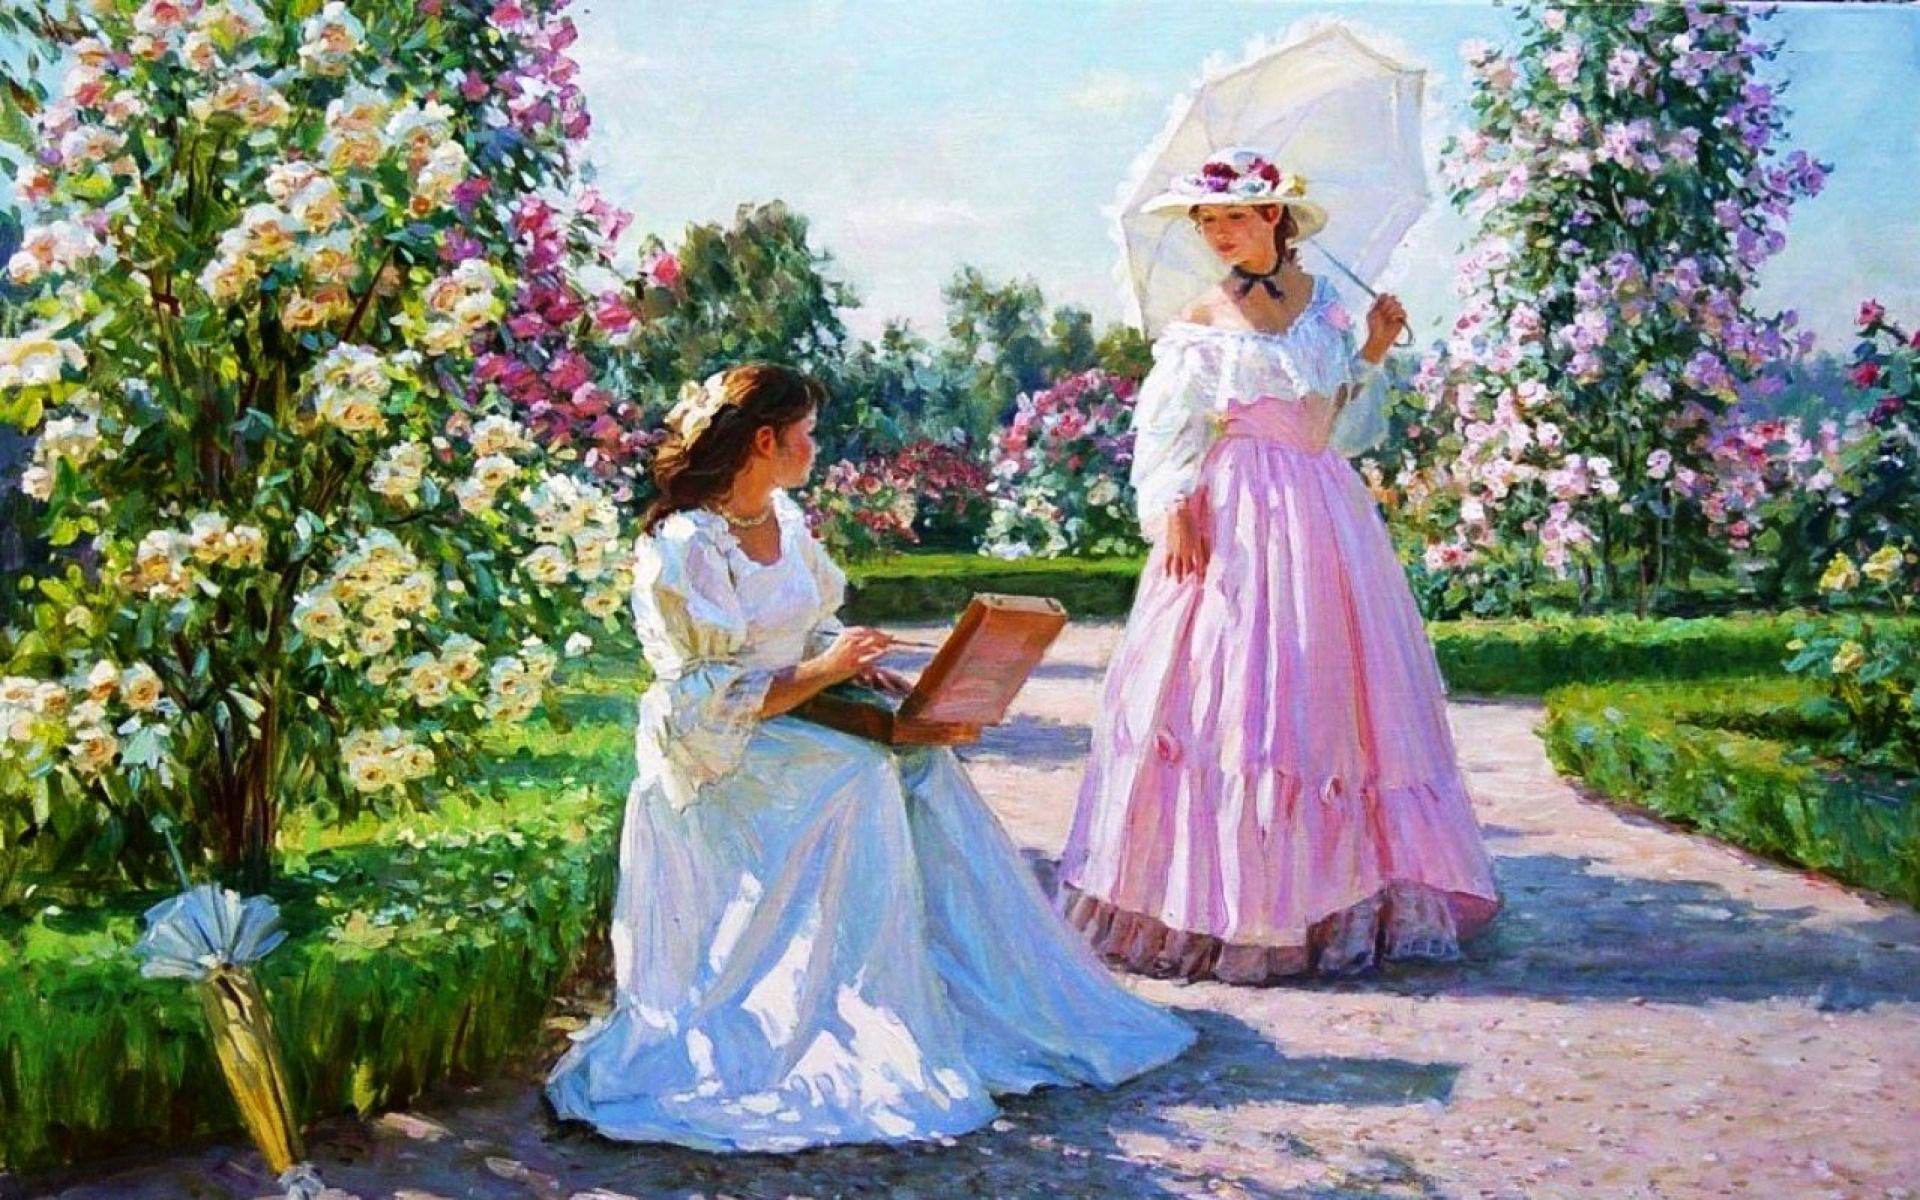 Women & Beautiful Rose Garden wallpaper. Women & Beautiful Rose